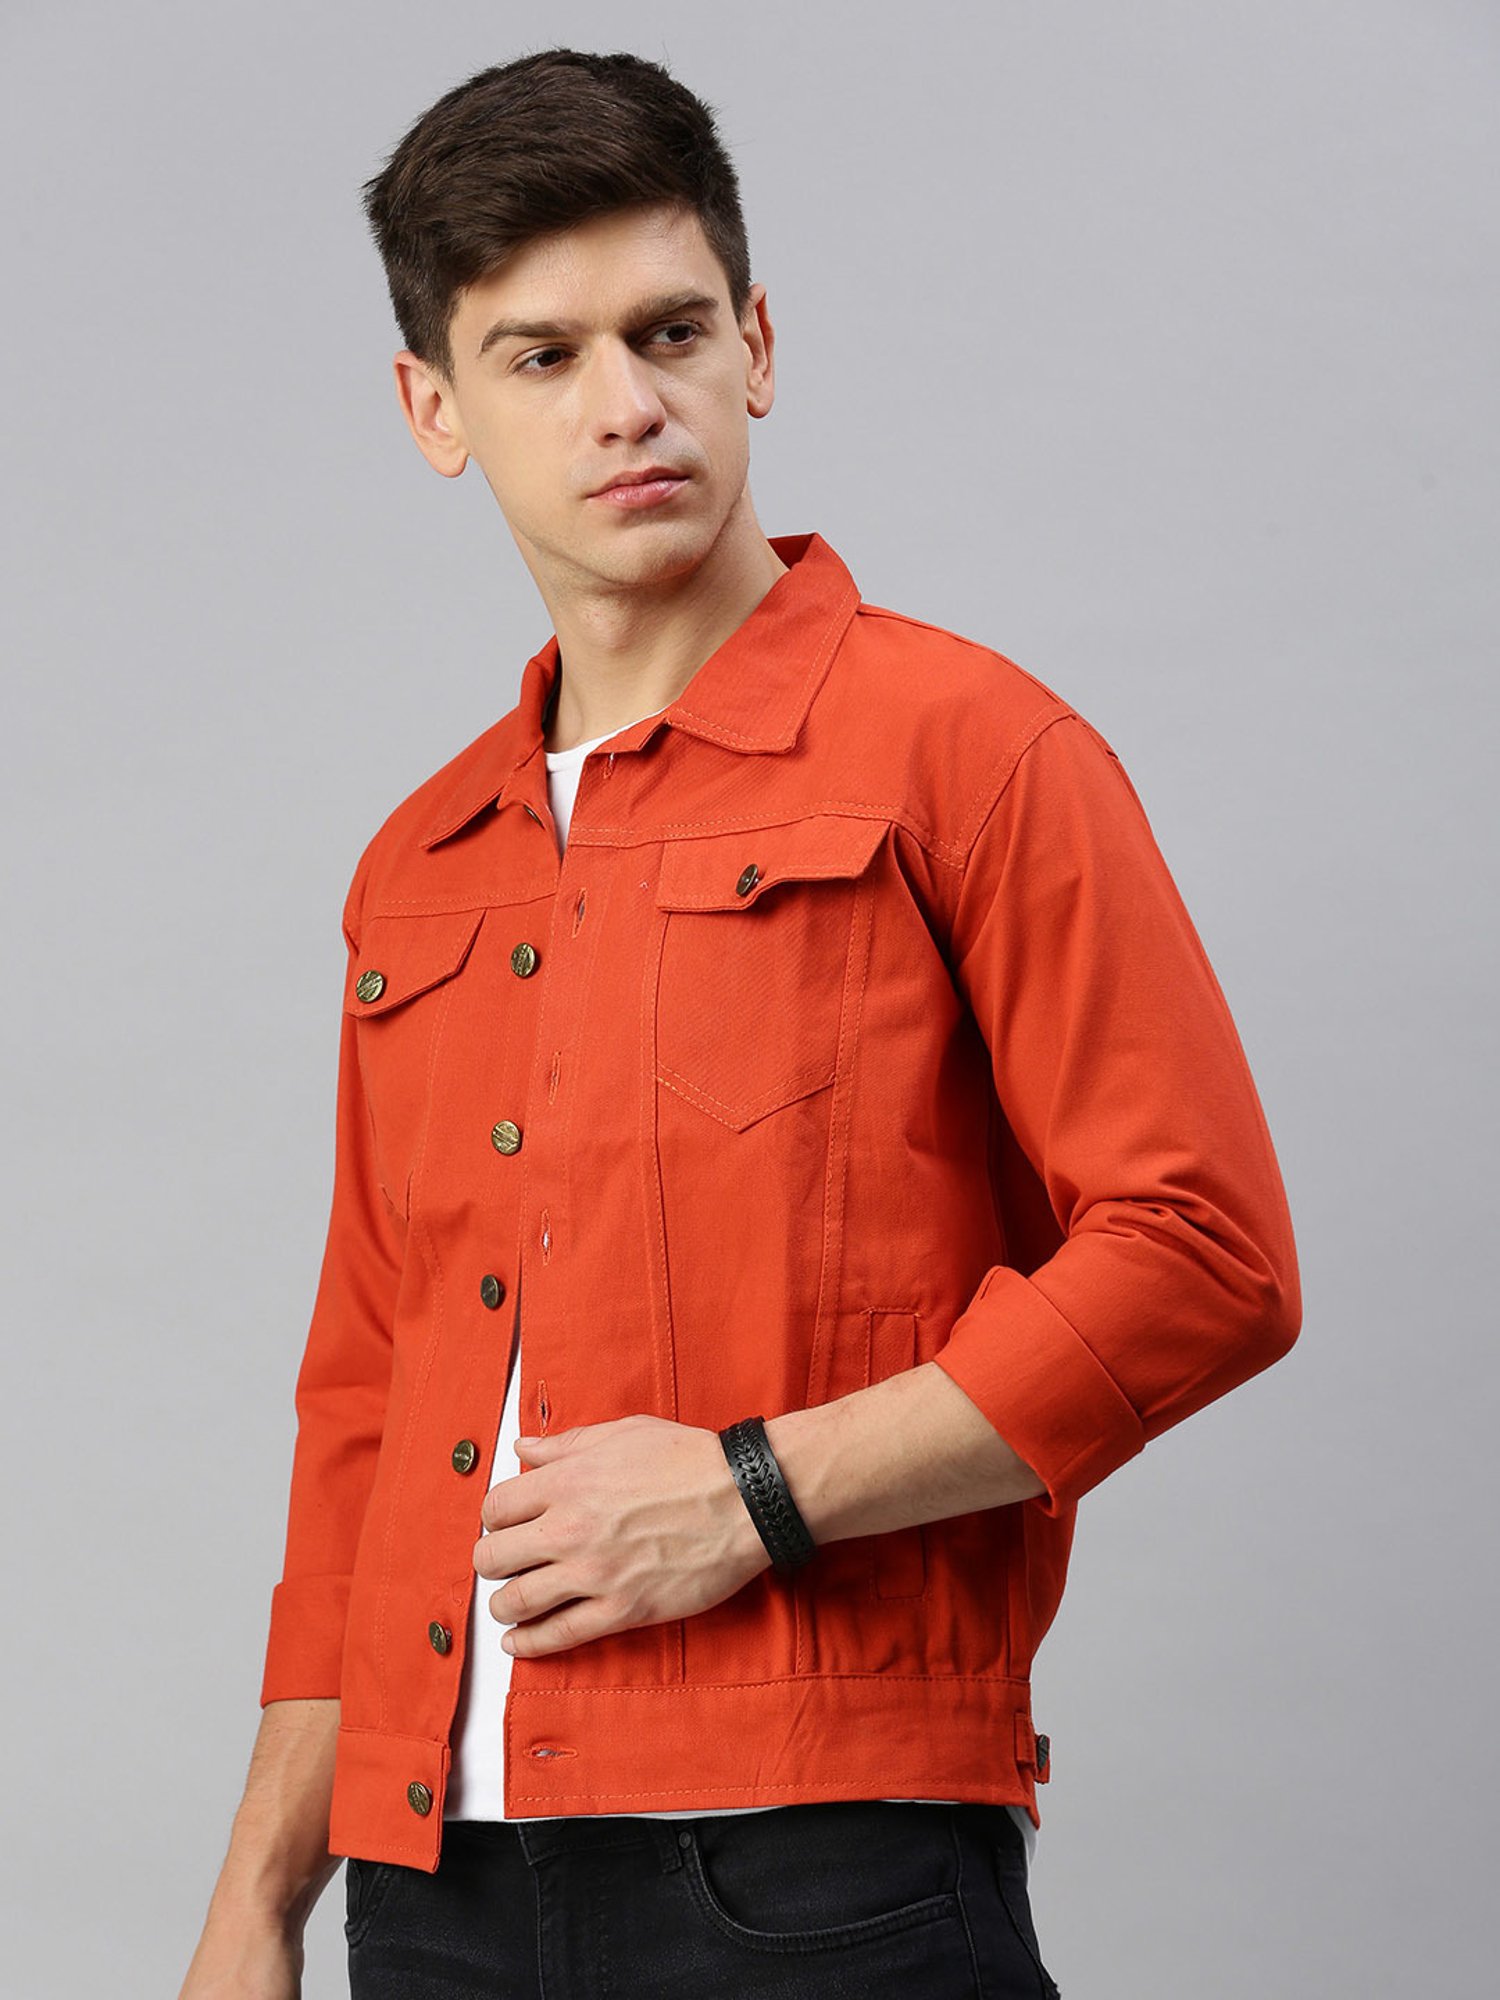 Shop the Red Let's Escape Denim Jacket | Outerwear – The ZigZag Stripe